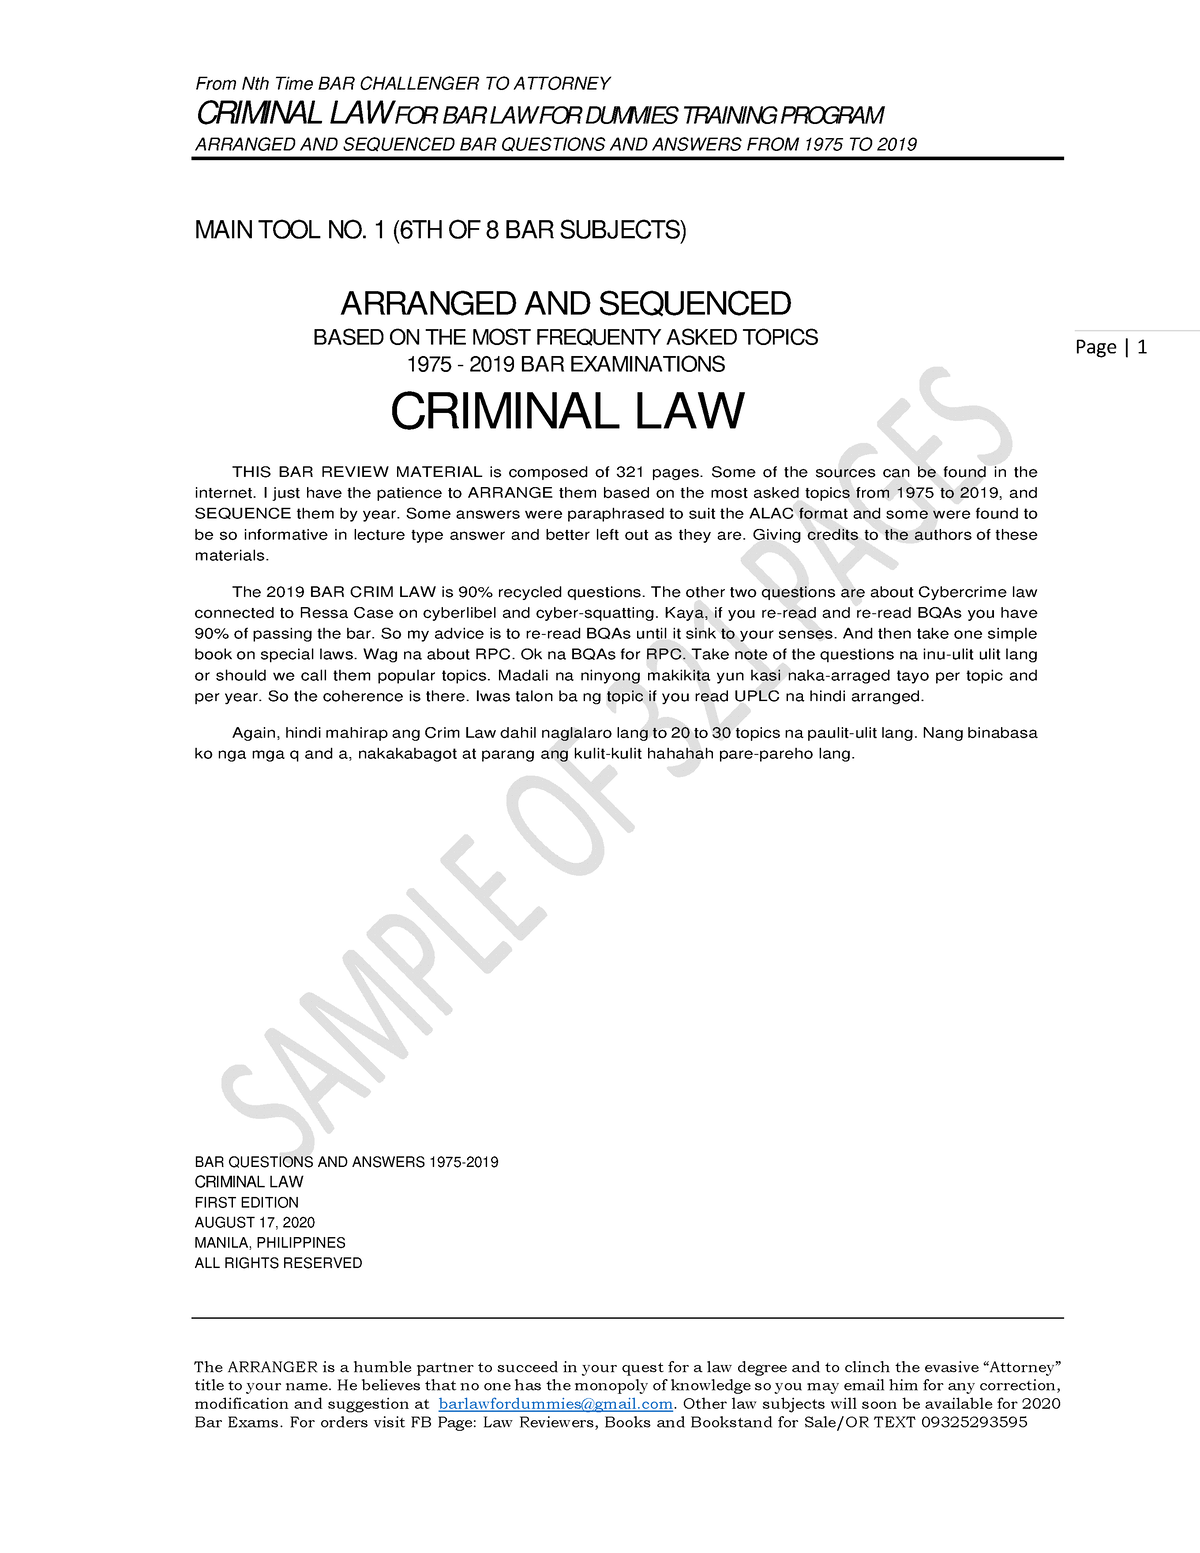 criminal law bar exam essay questions